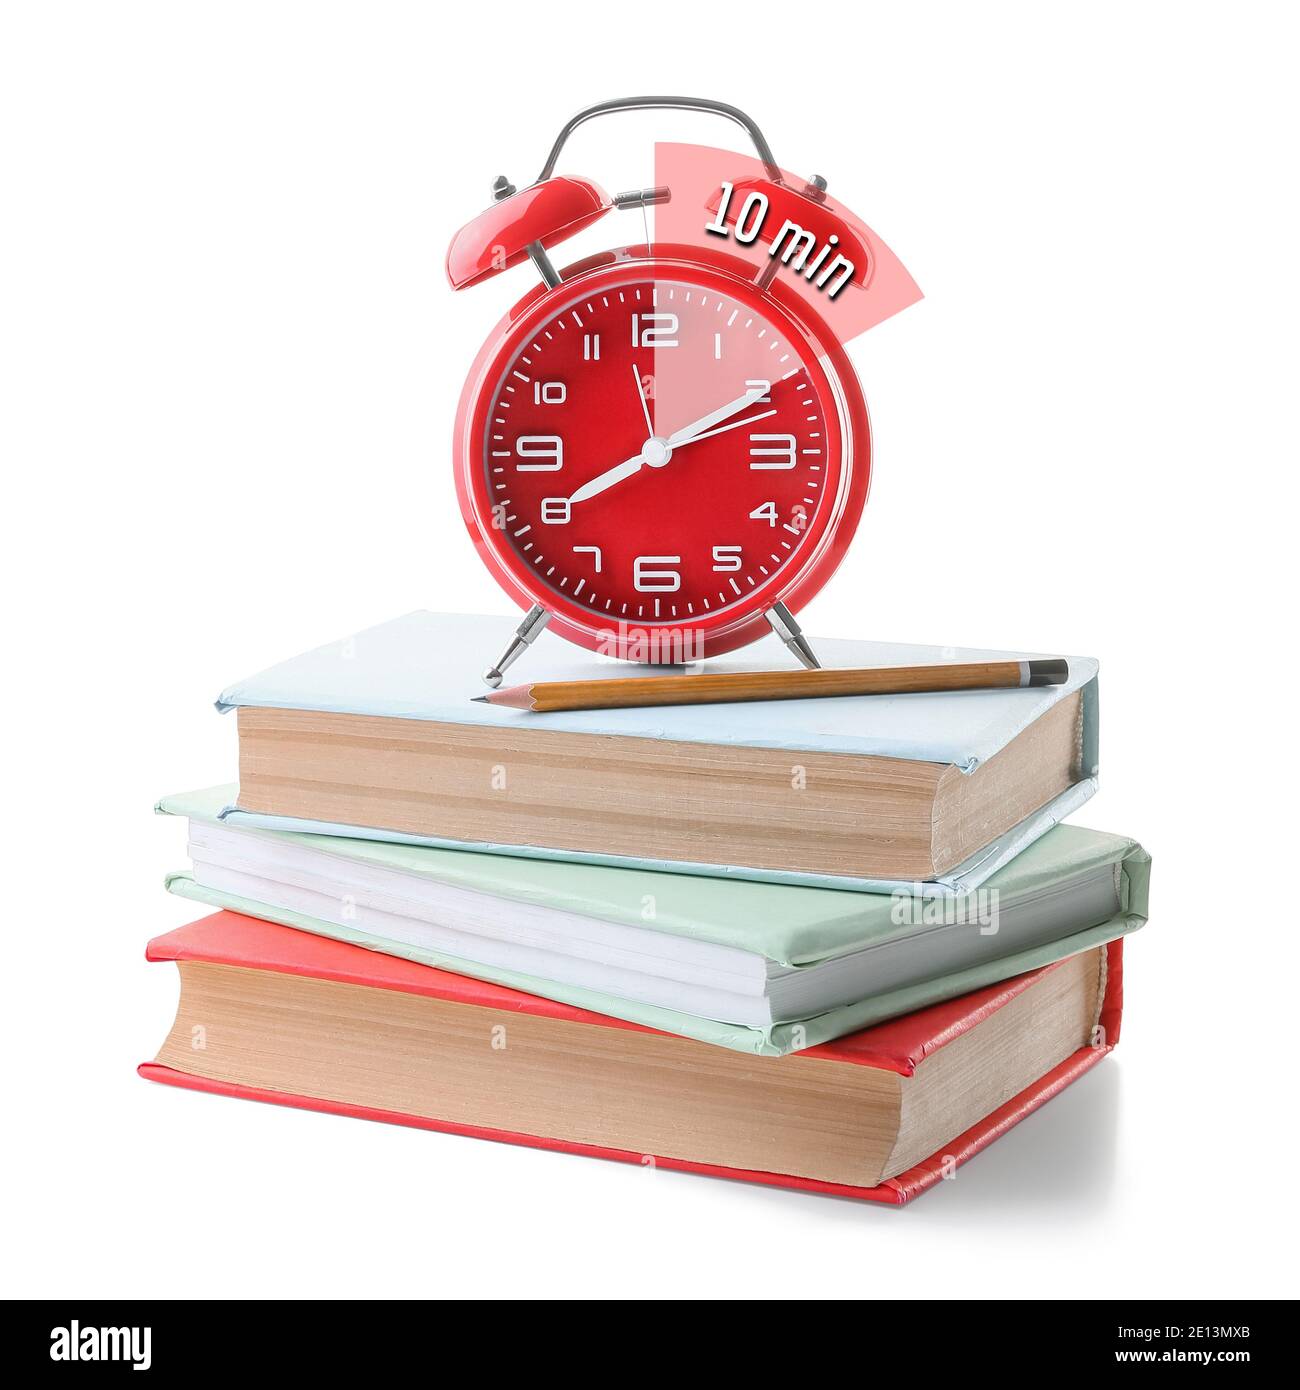 Wecker mit Timer für 10 Minuten und Bücher auf weißem Hintergrund.  Zeitmanagement-Konzept Stockfotografie - Alamy